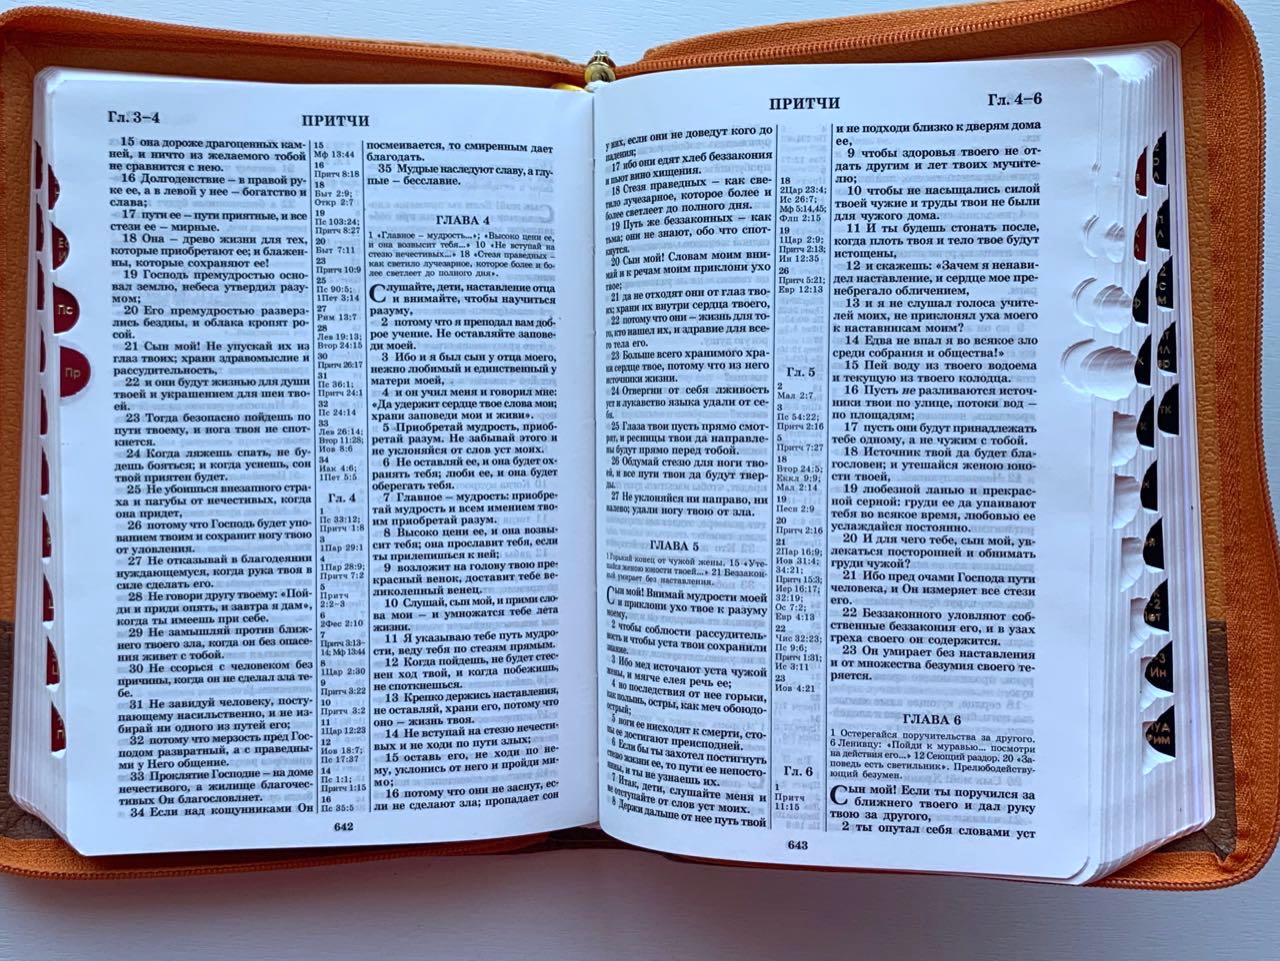 БИБЛИЯ 046zti формат, переплет из искусственной кожи на молнии с индексами, надпись золотом "Библия", цвет темно-коричневый/светло-коричневый полукругом, средний формат, 132*182 мм, цветные карты, шрифт 12 кегель